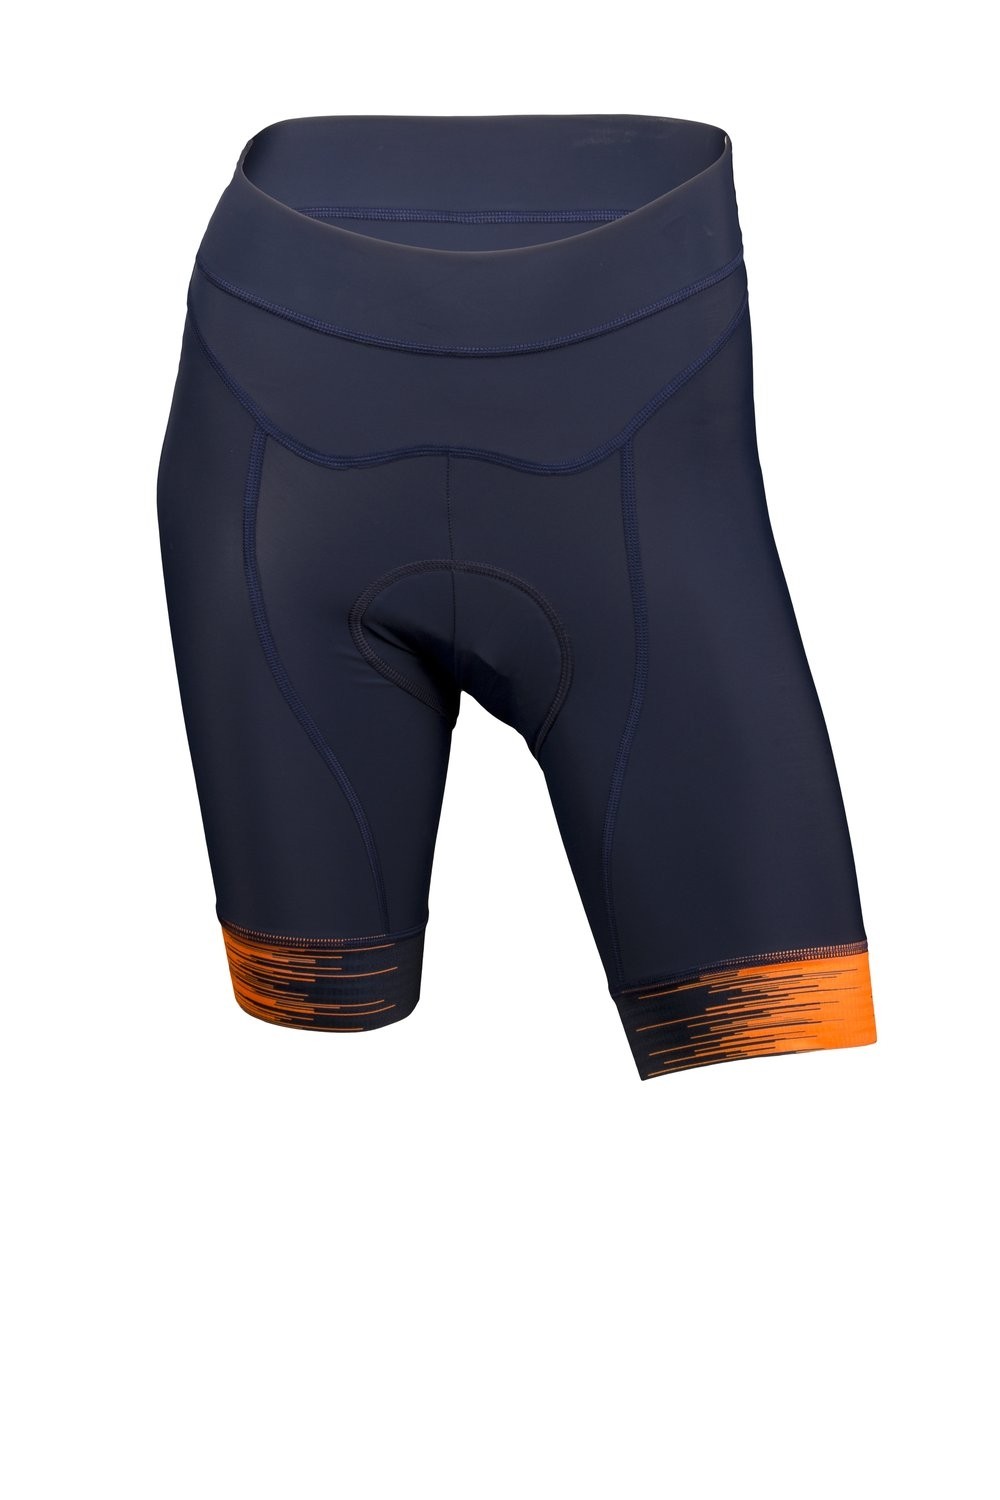 Vermarc seiso sp.l cuissard de cyclisme courtes femme navy bleu fluo orange